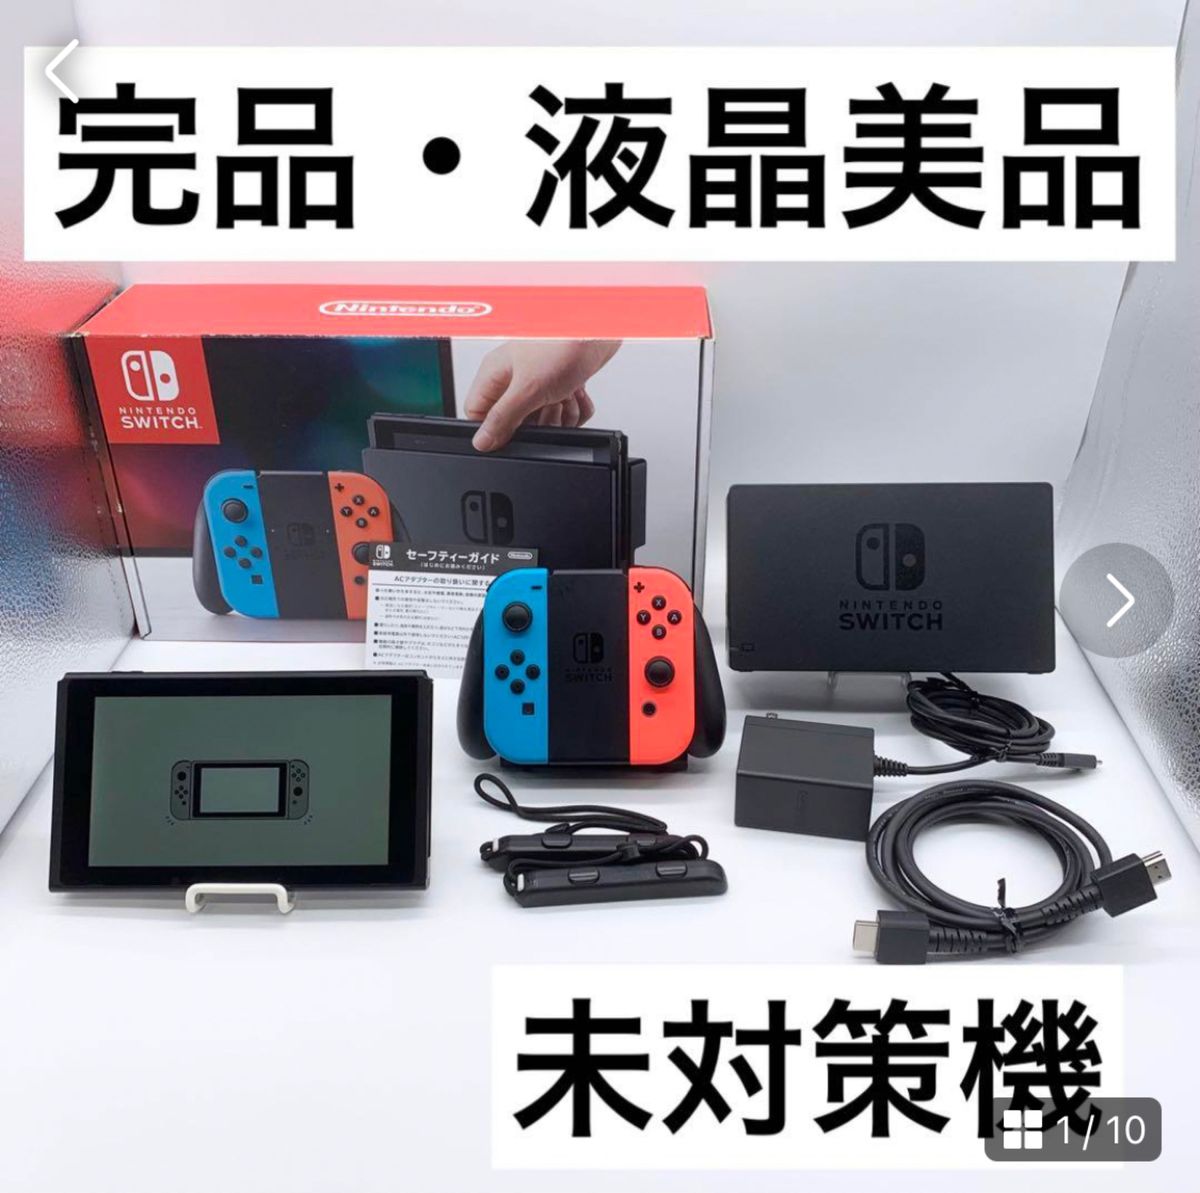 新発売の 美品 未対策機 Nintendo 未対策機 Switch 本体のみ 未対策機